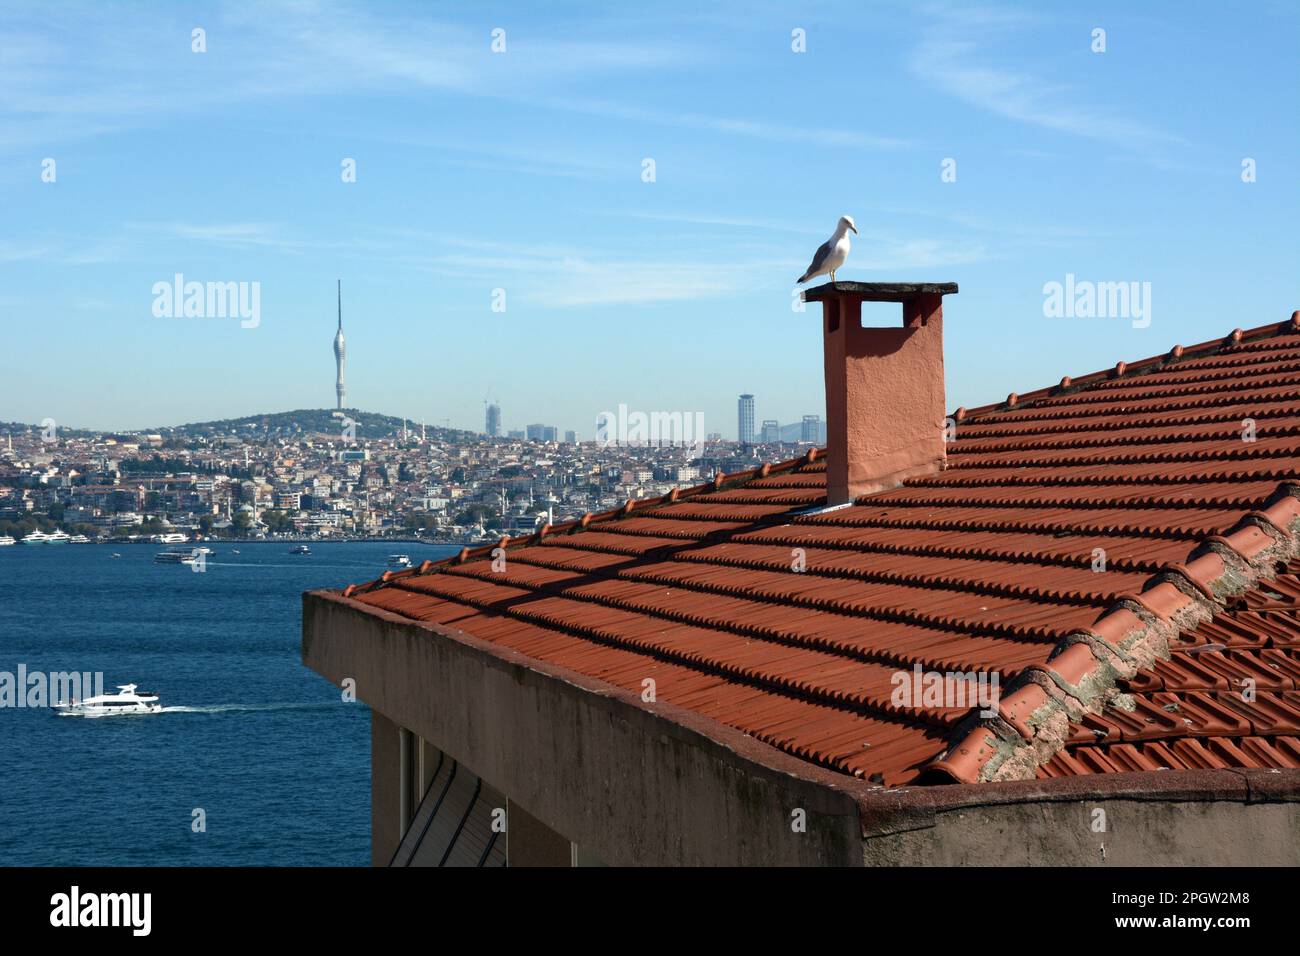 Vue sur le détroit du Bosphore de Cihangir, Beyoglu du côté européen à Uskudar du côté asiatique d'Istanbul, Turkiye / Turquie. Banque D'Images